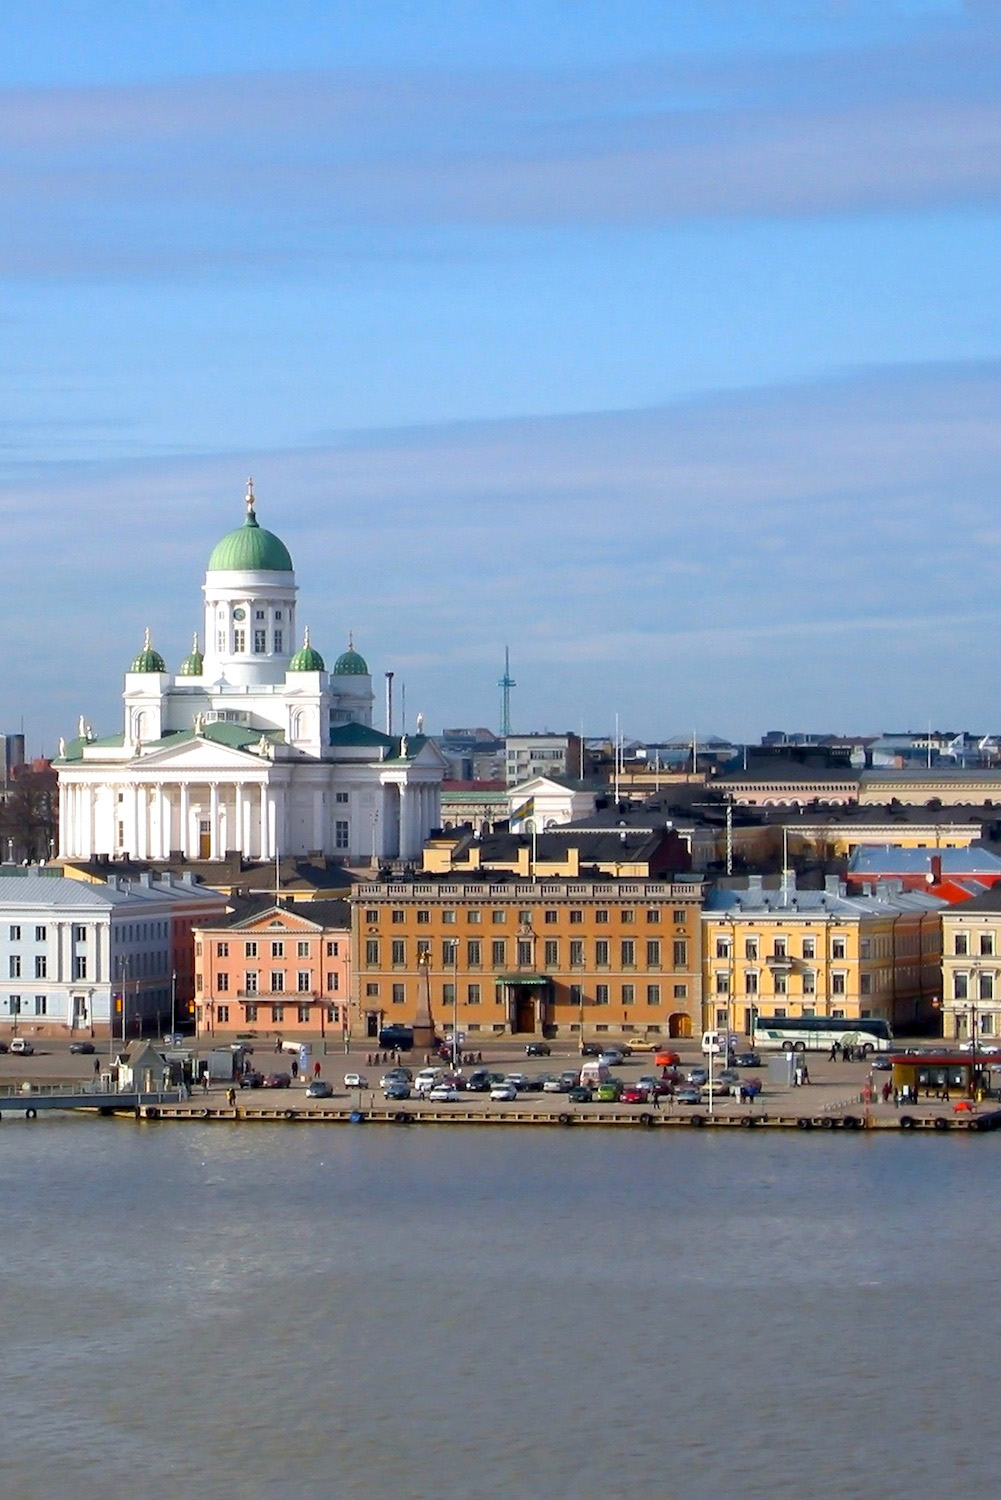 Helsinki via Wikimedia Commons user Ilmari Karonen